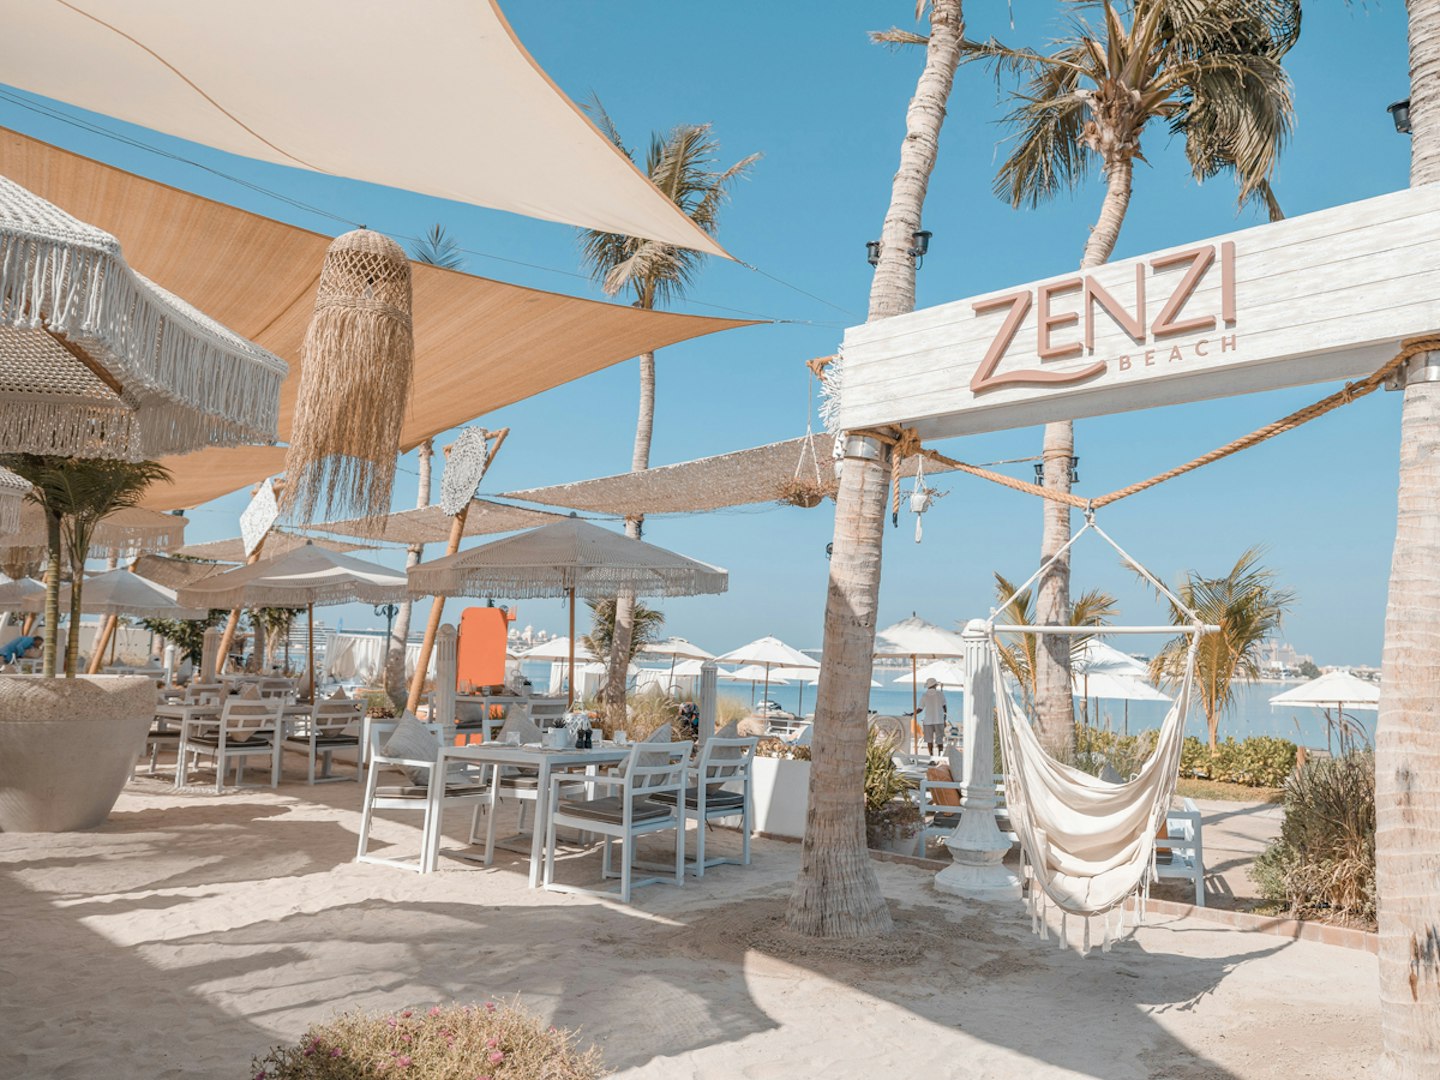 Zenzi Beach